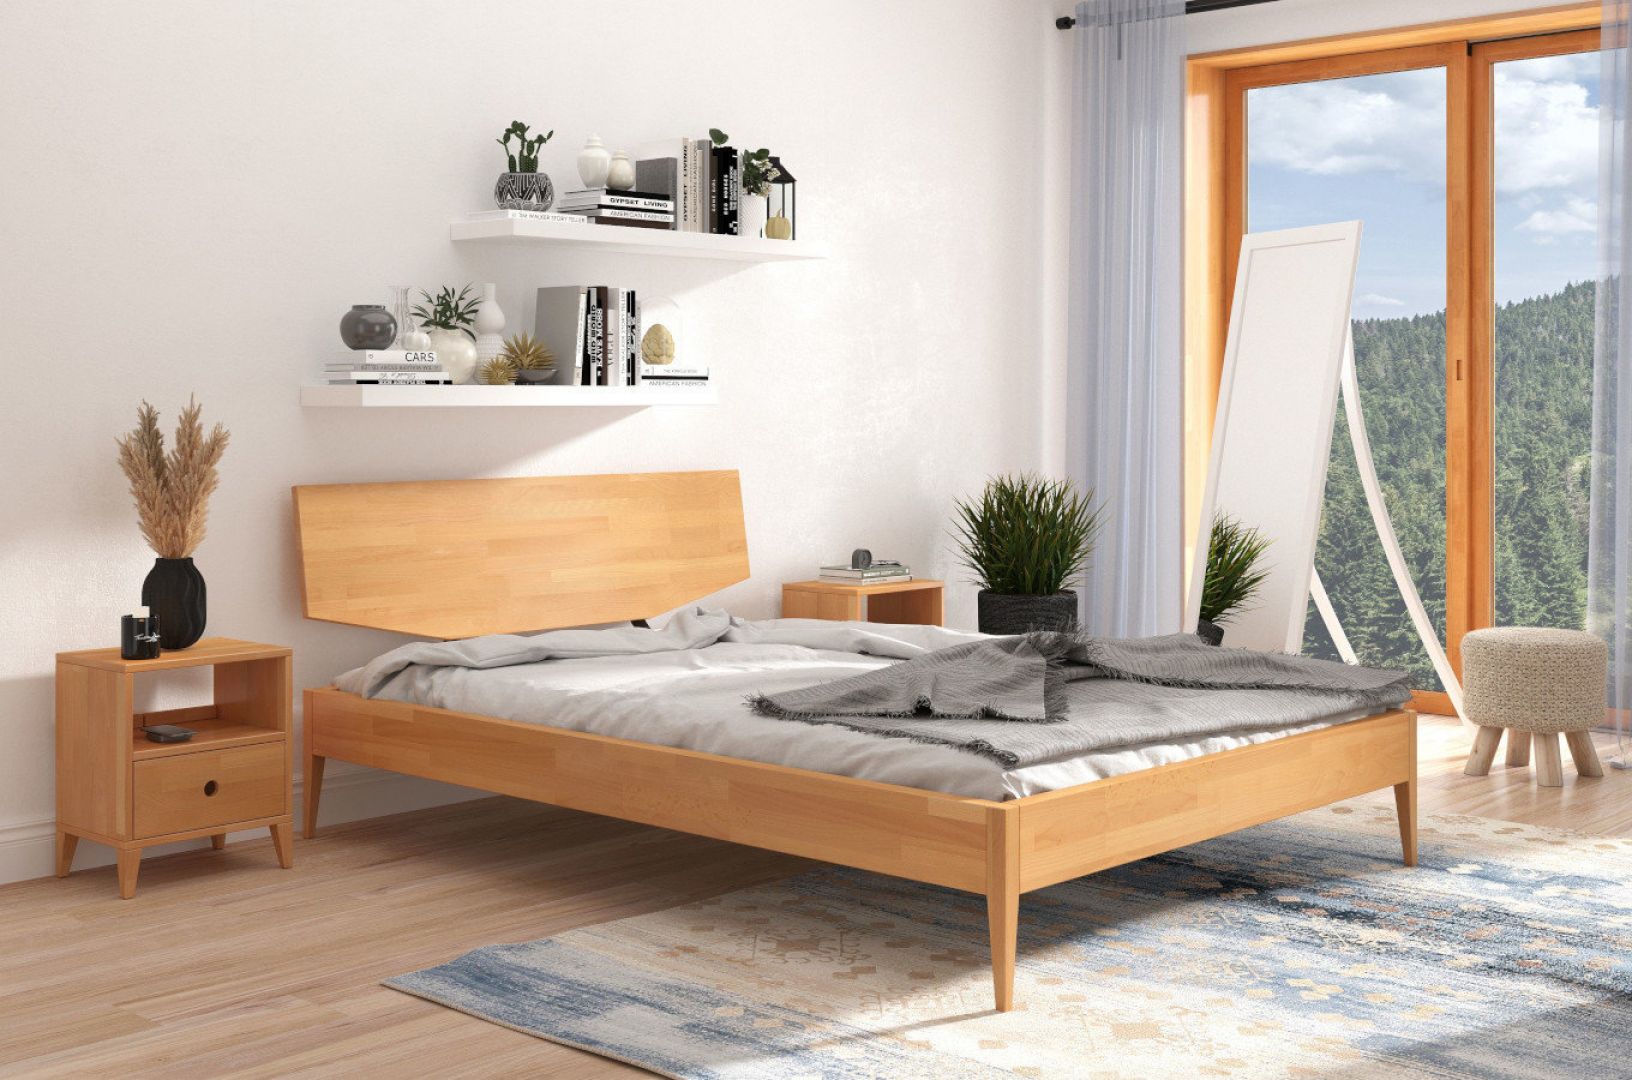 Łóżko drewniane, bukowe Skandica Sund. Fot. Onemarket.eu